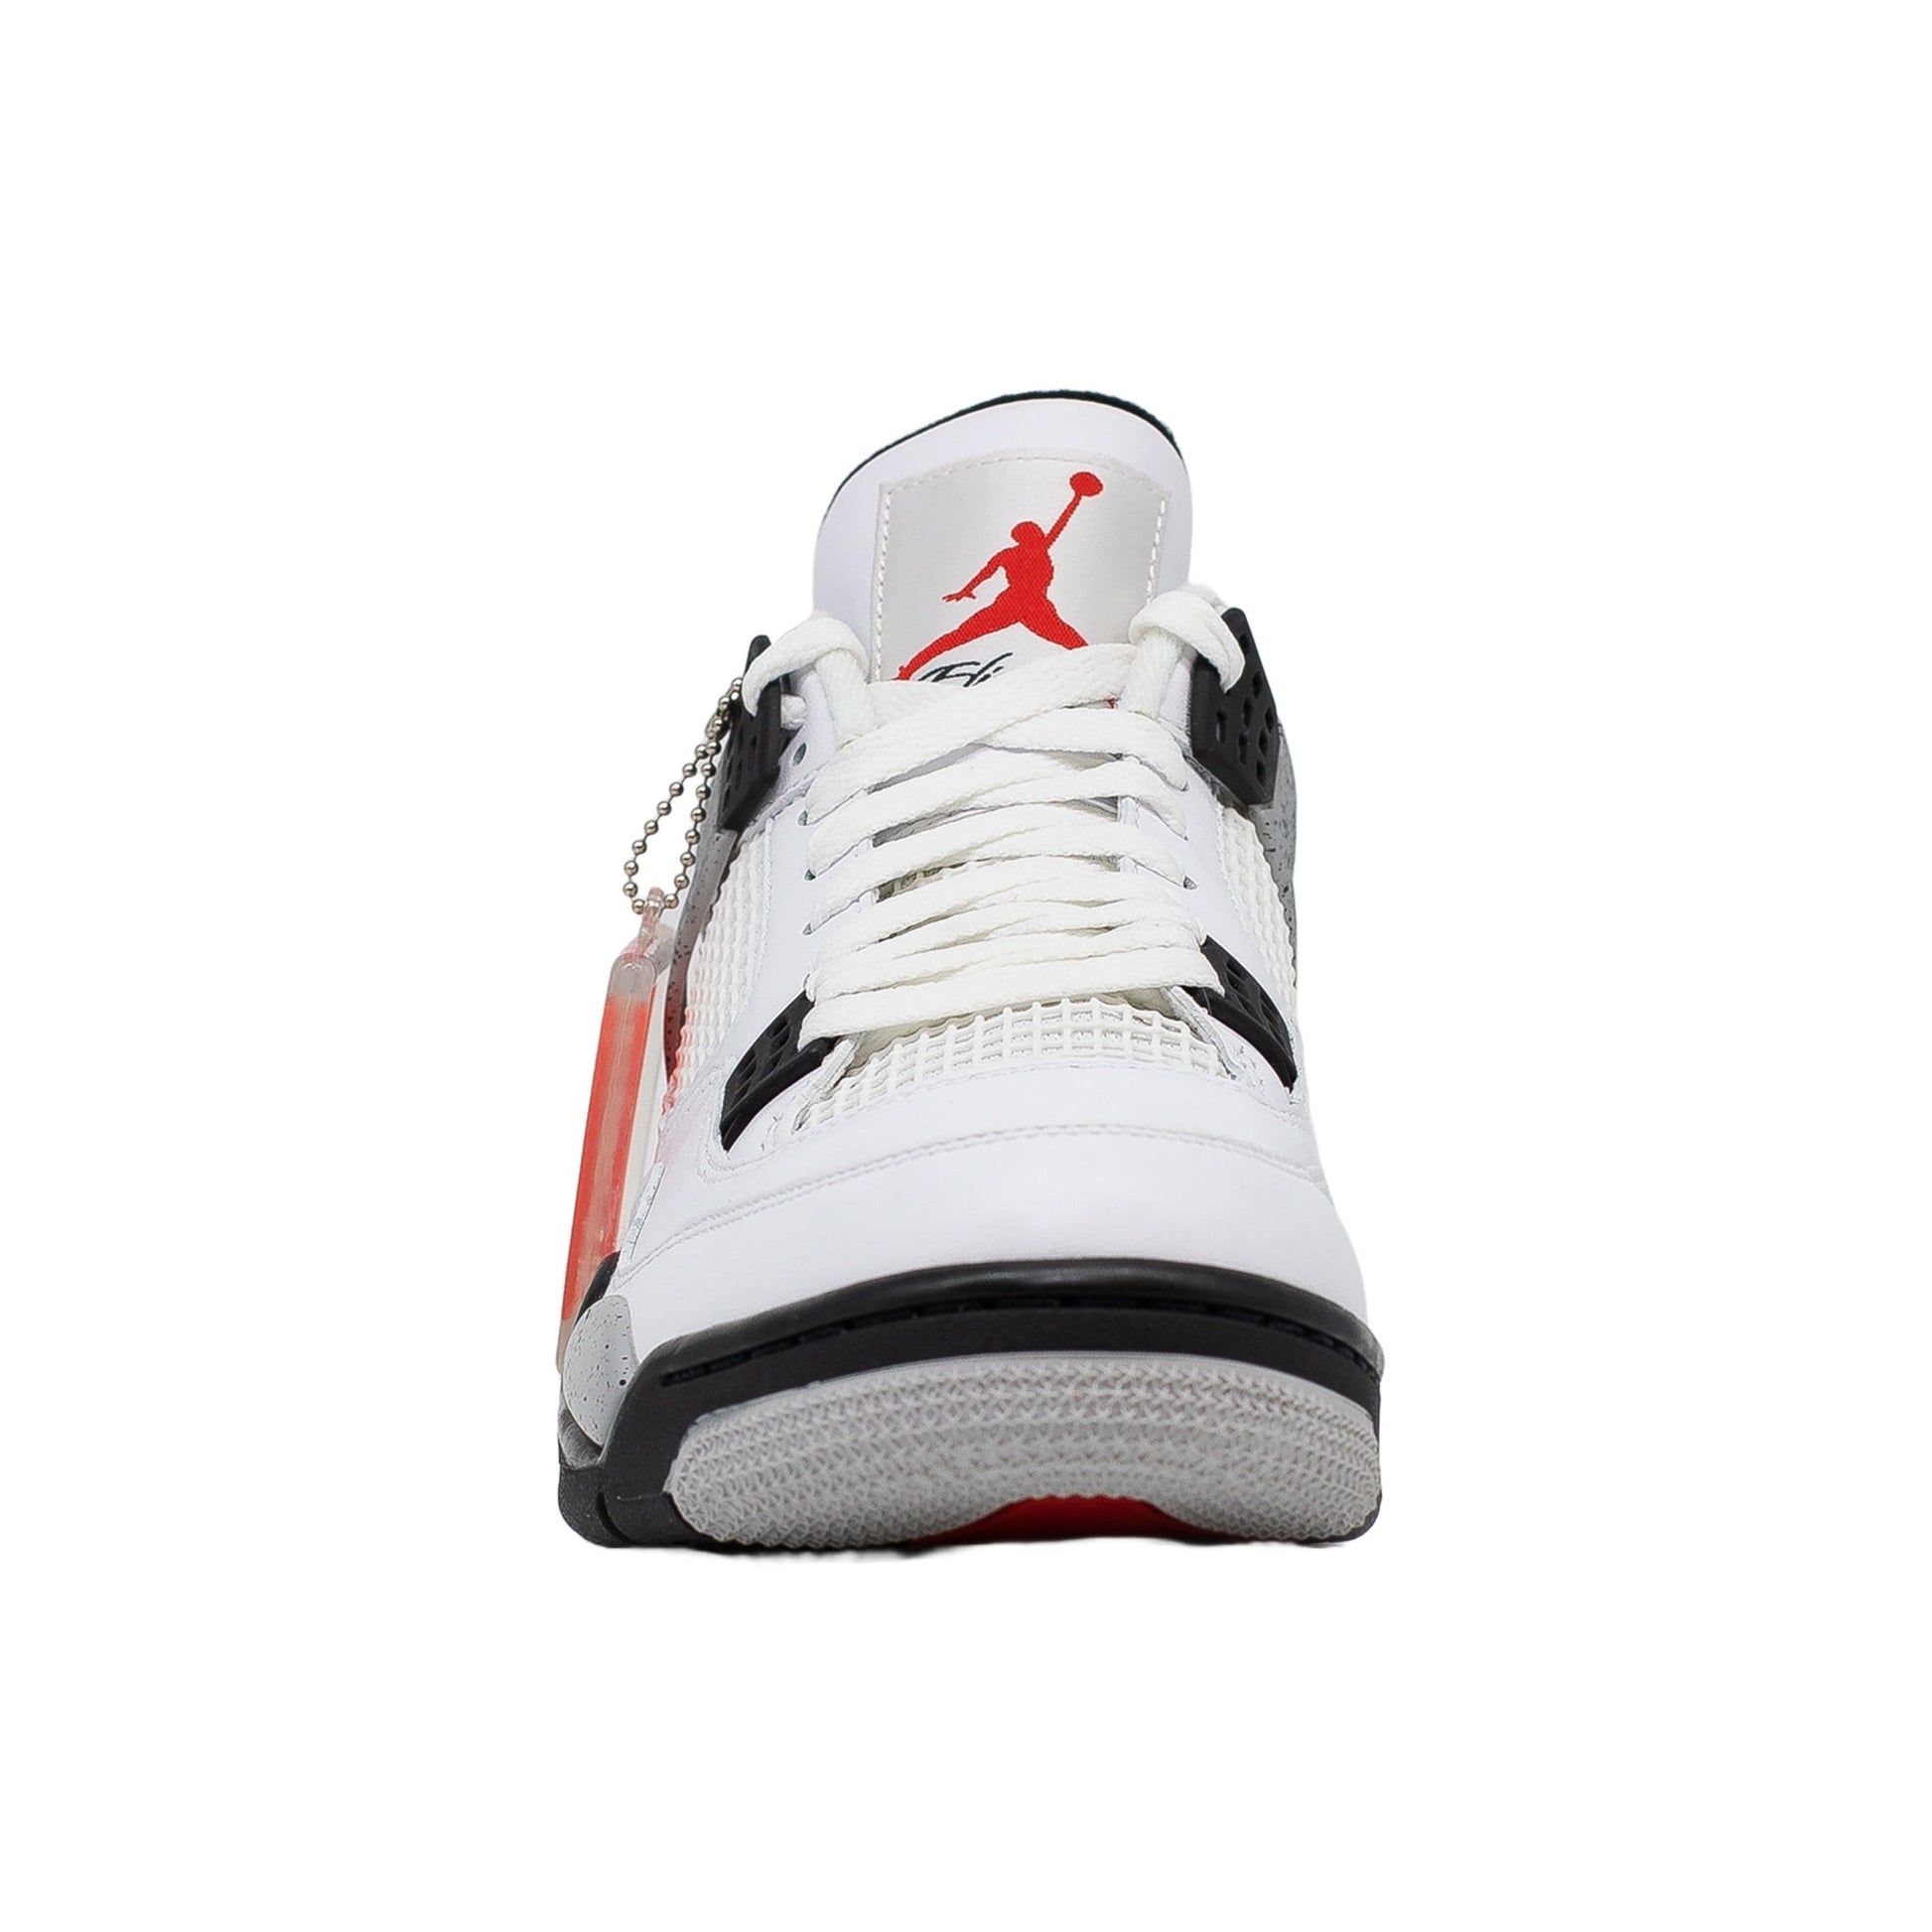 Air Jordan 4, White Cement (2016)